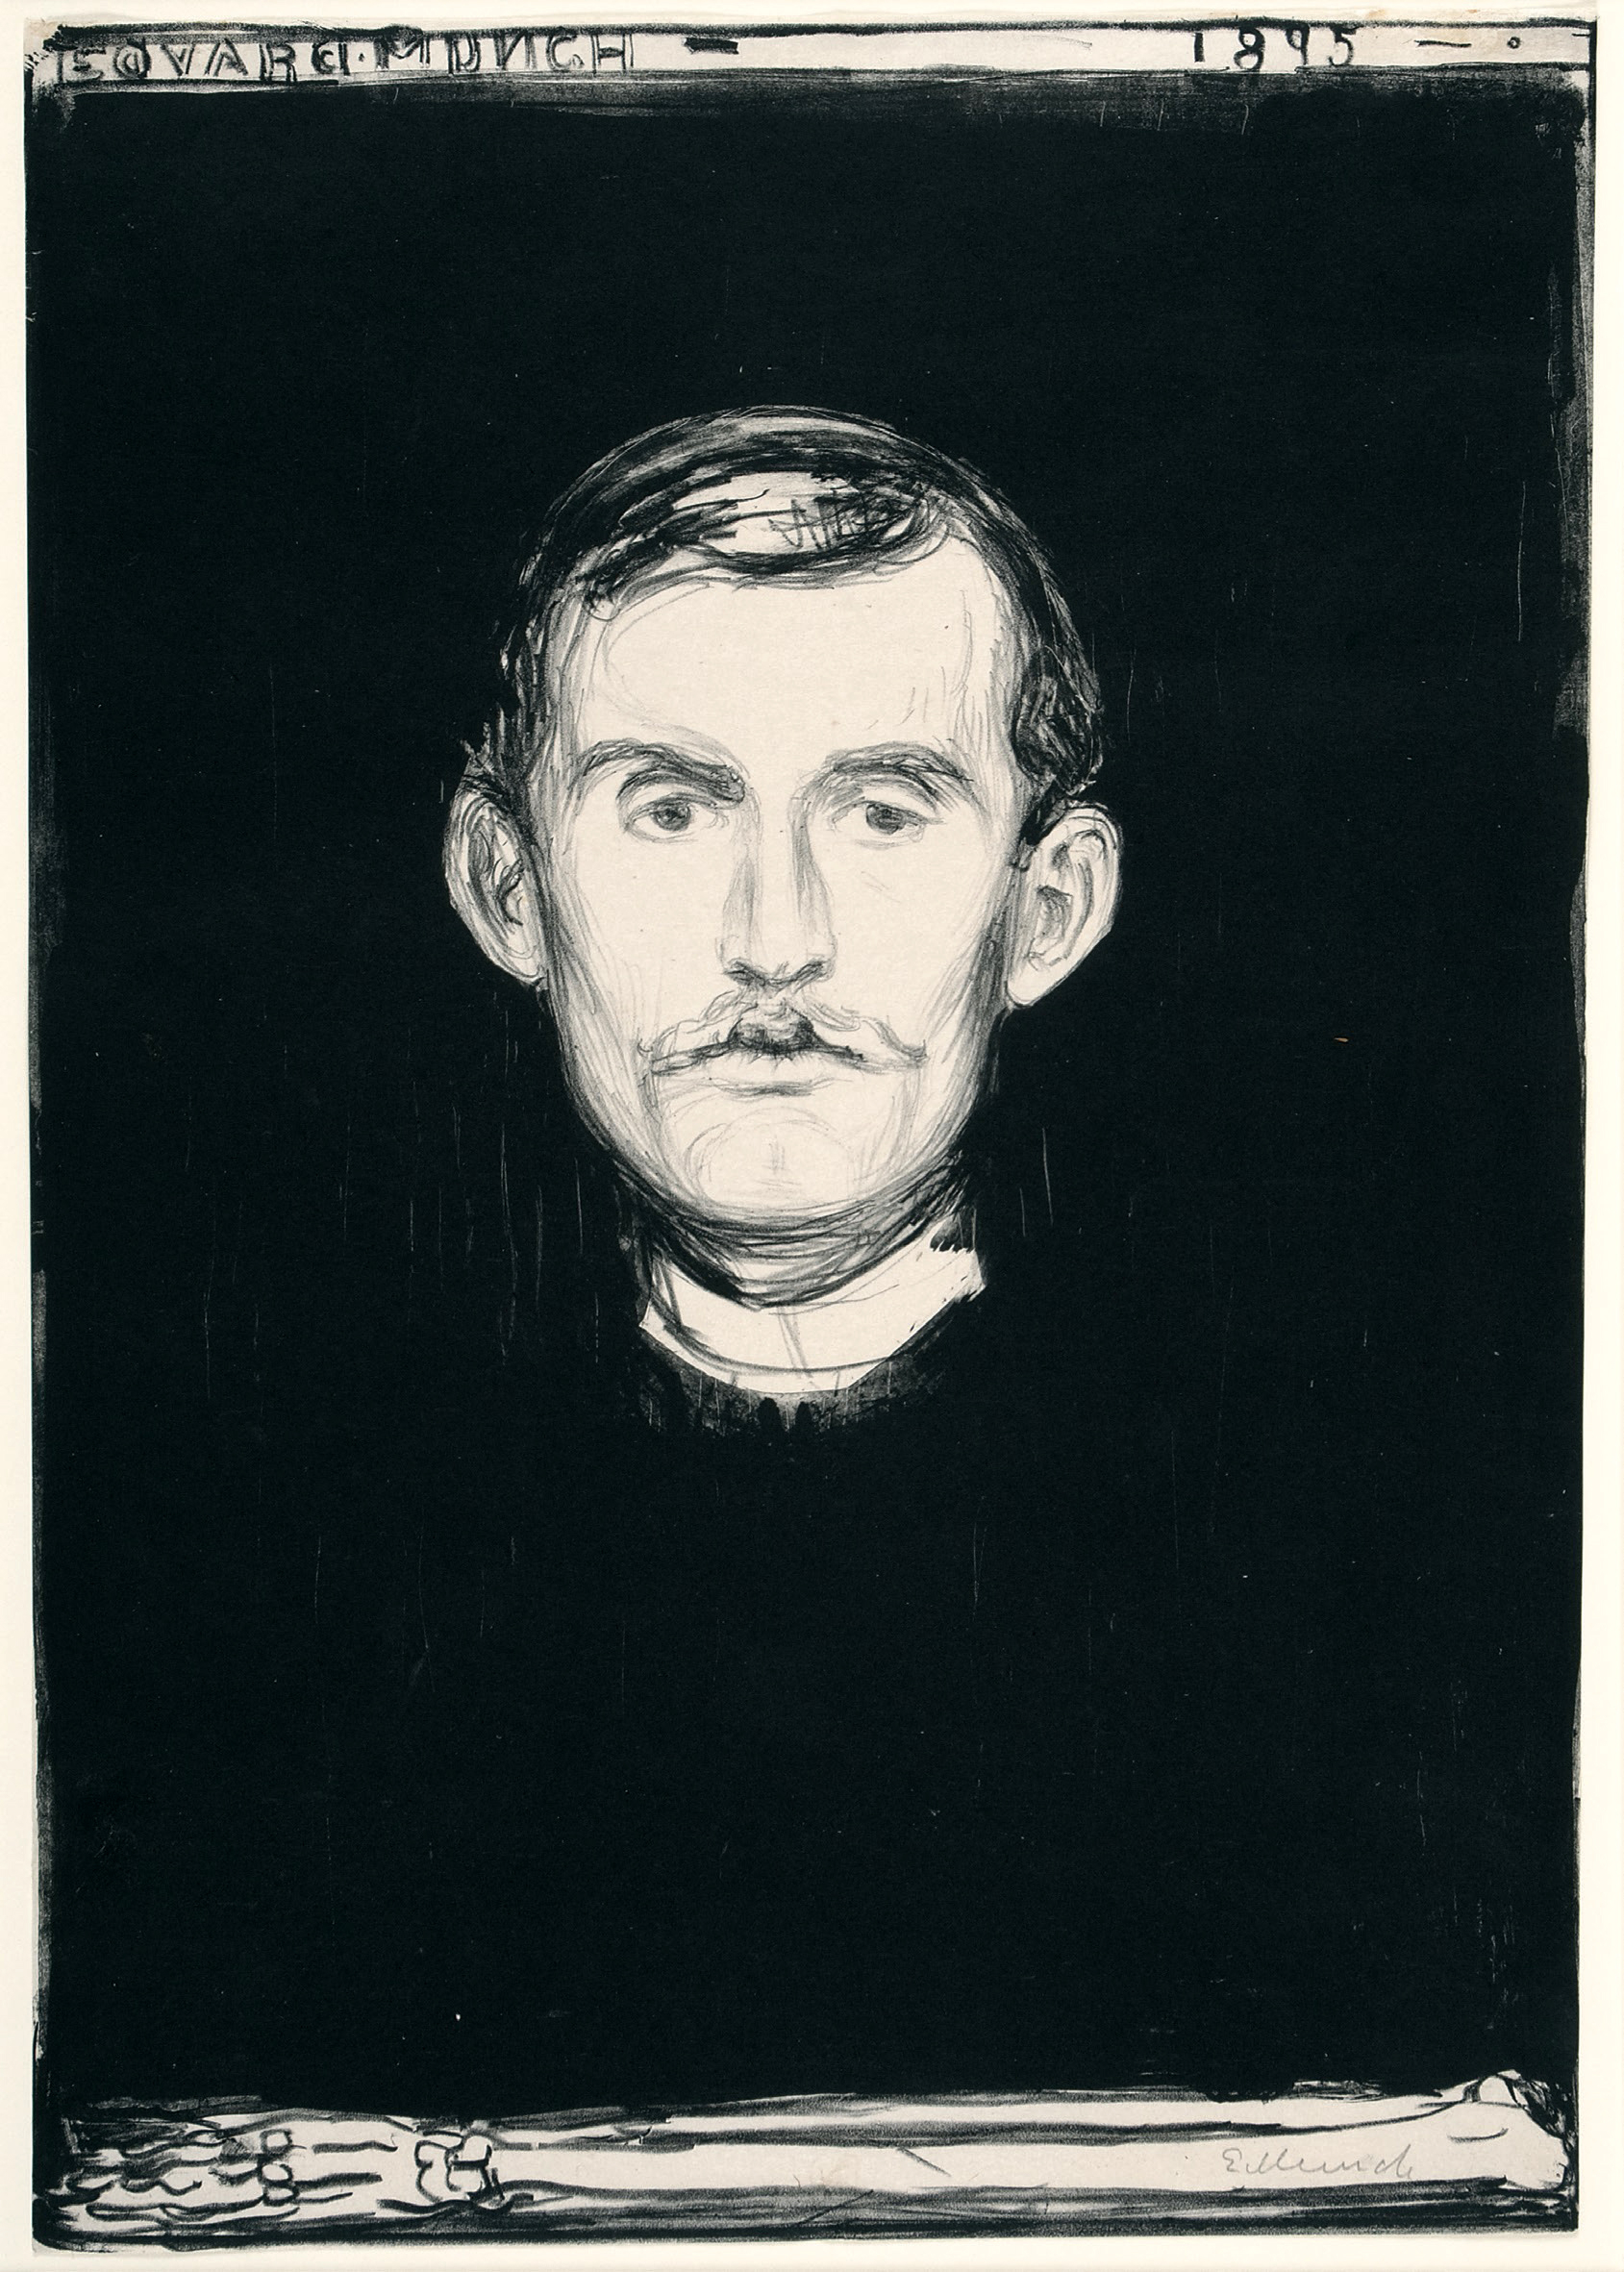 팔뼈가 있는 자화상(Self-Portrait), 1895, 종이에 석판(Lithograph),Private Collection, Norway Courtesy of Peder Lund.